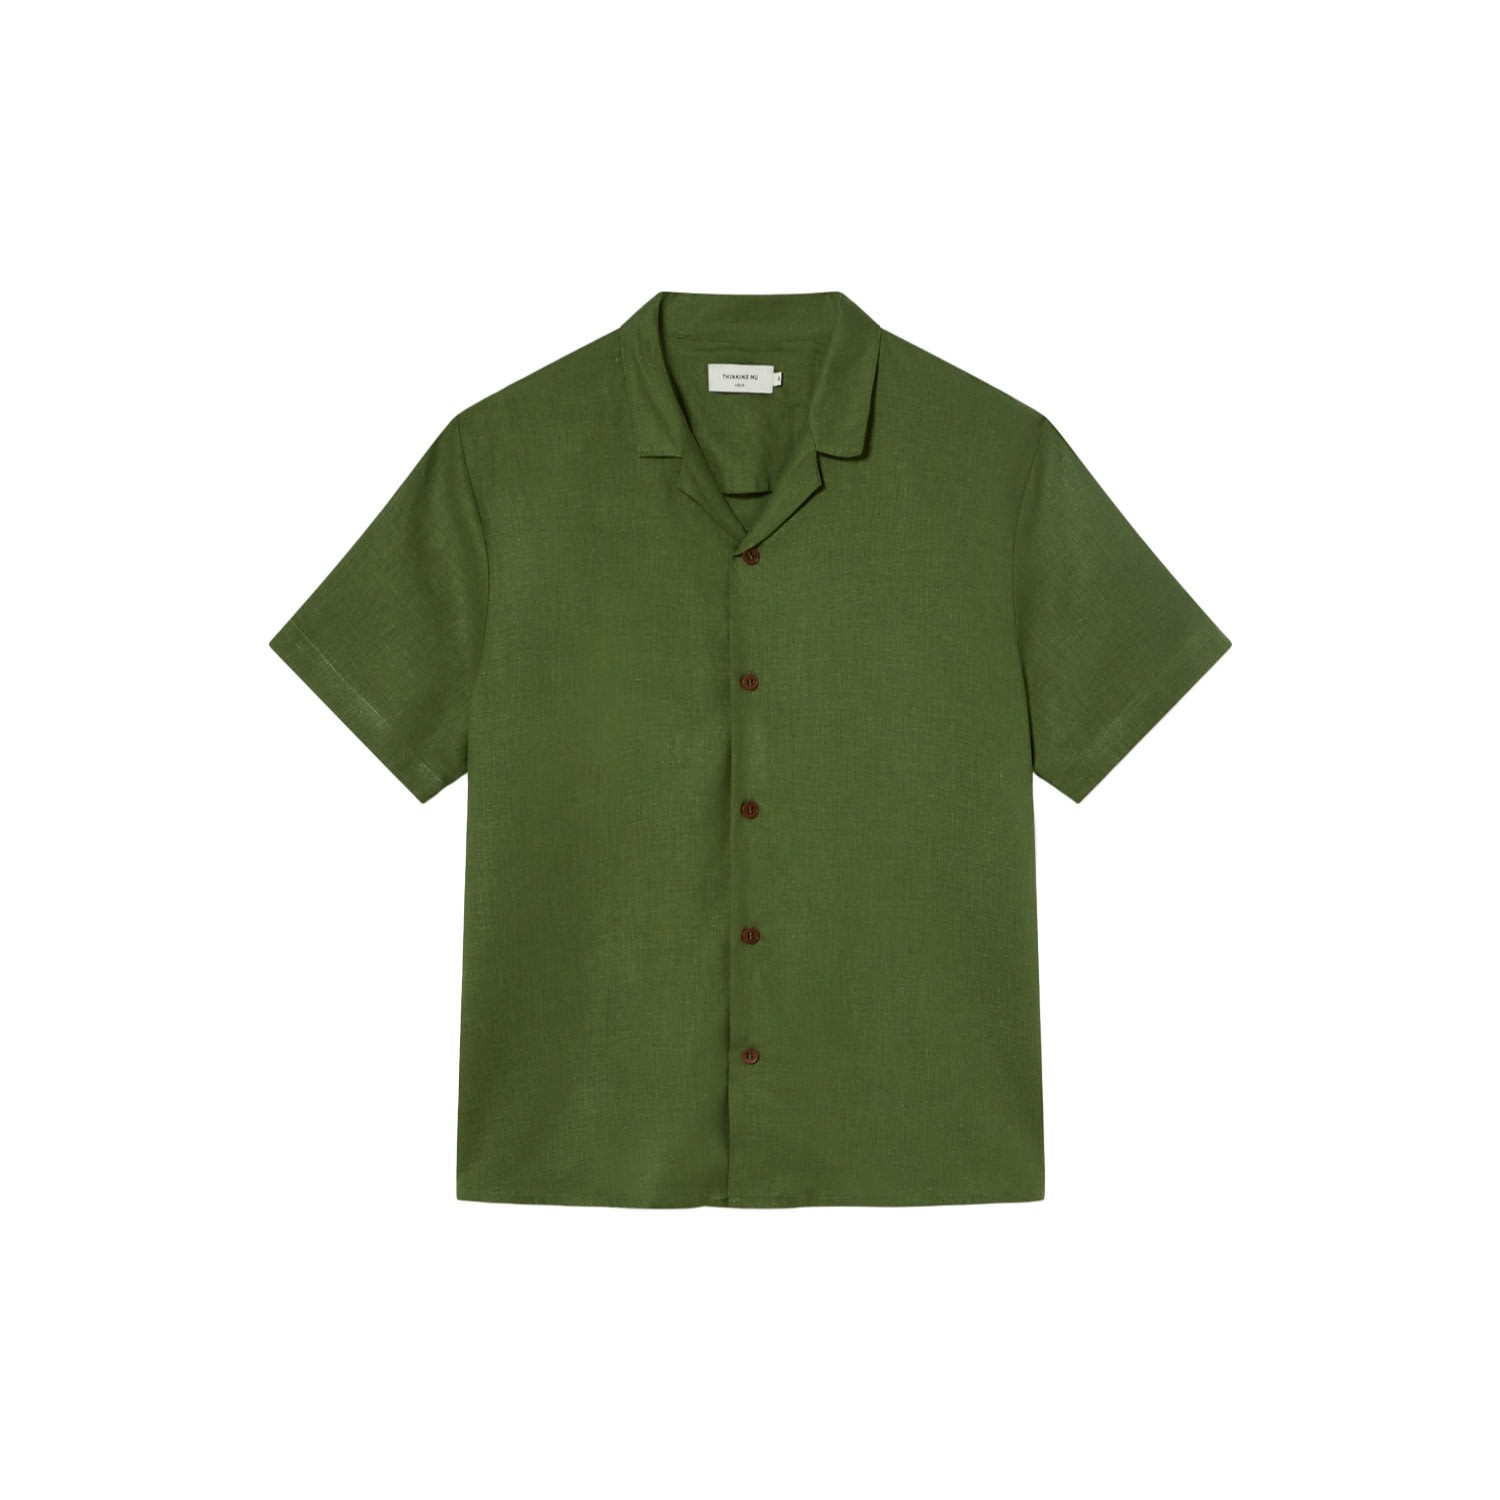 Thinking Mu Men's Green Hemp Jules Unisex Shirt